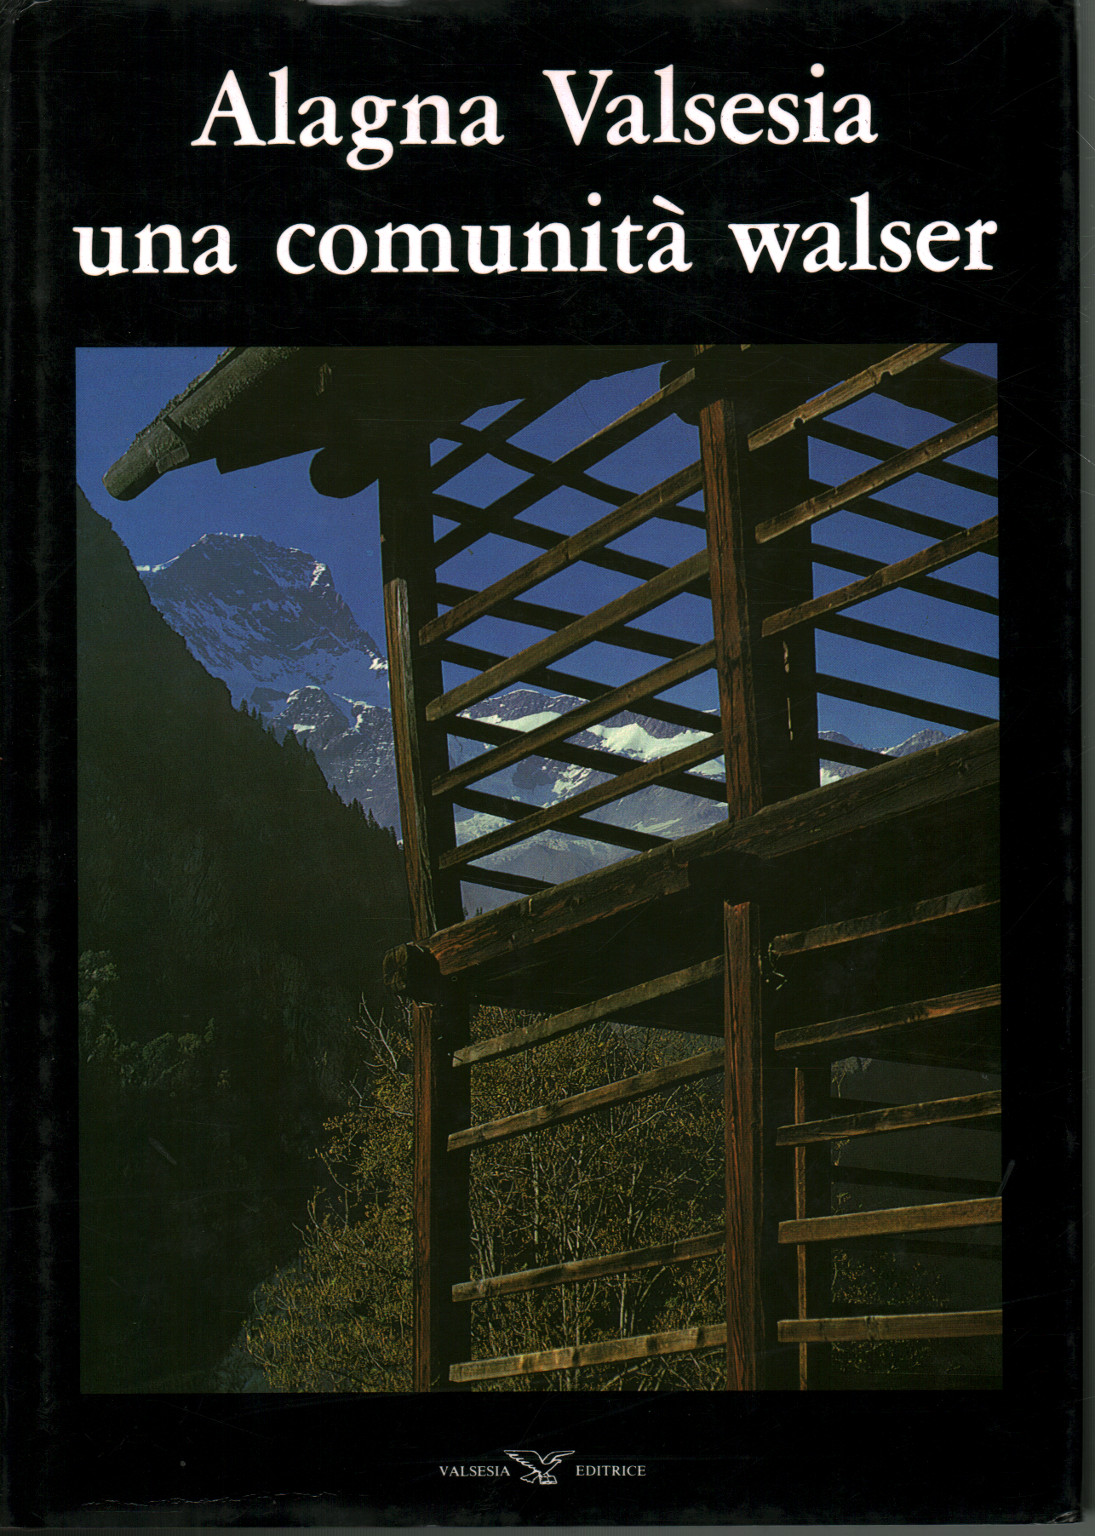 Alagna Valsesia et communauté Walser